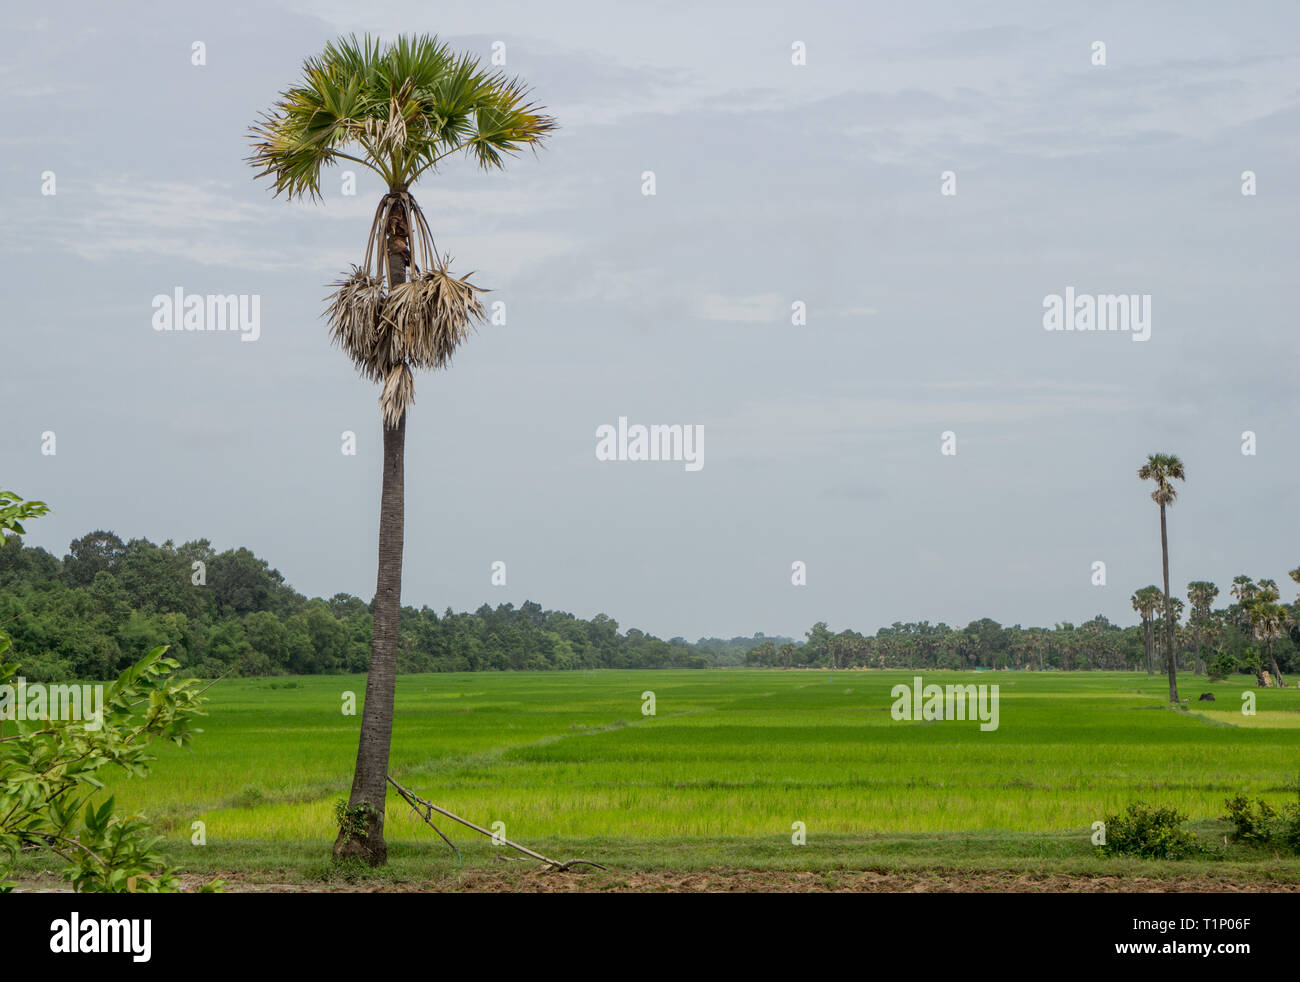 Traditionelle asiatische landwirtschaftliche Werkzeuge stützte sich auf eine Palme mit großen Reisfelder im Hintergrund Stockfoto